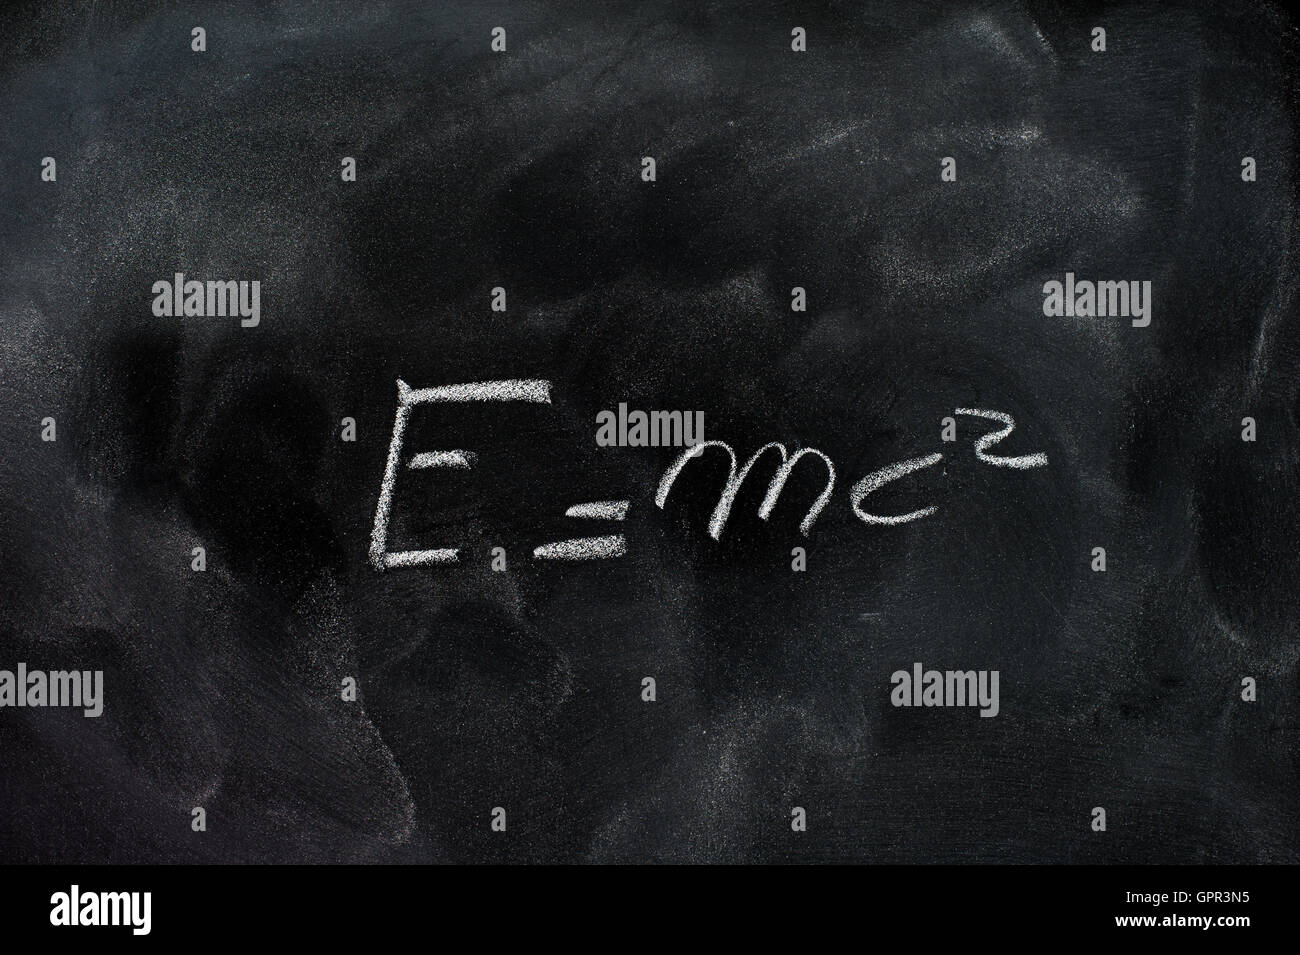 La Relativité d'Einstein formule e =mc2 dessin à la craie blanche sur noir poussiéreux school board Banque D'Images